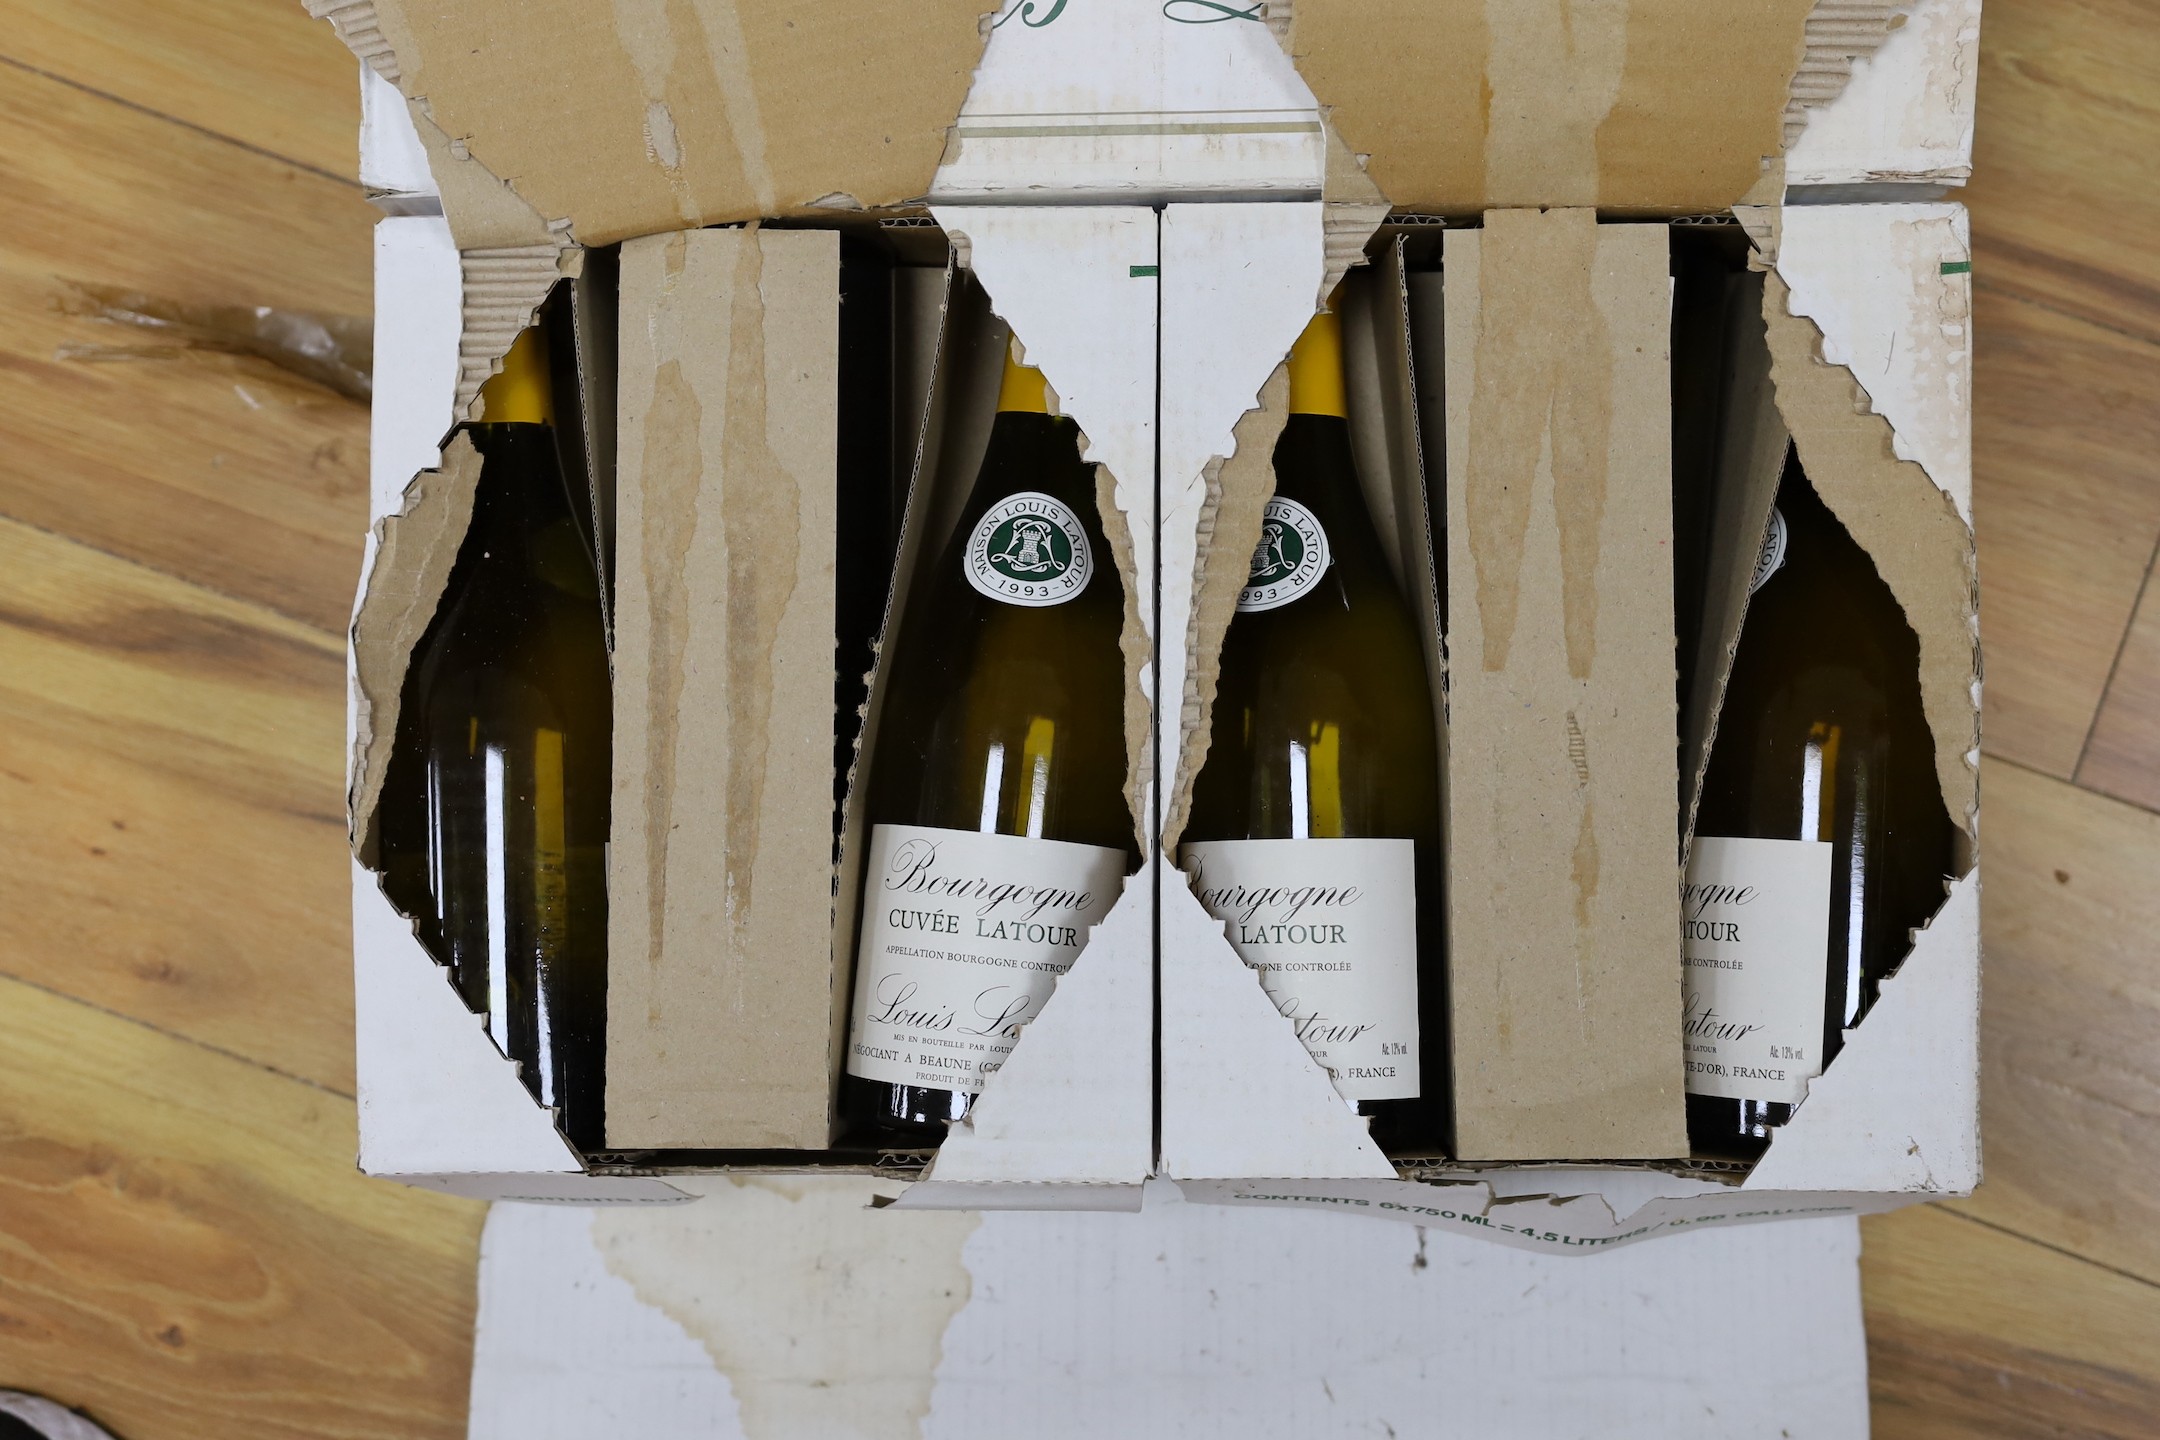 A case of twelve bottles of 1993 Maison Louis Latour